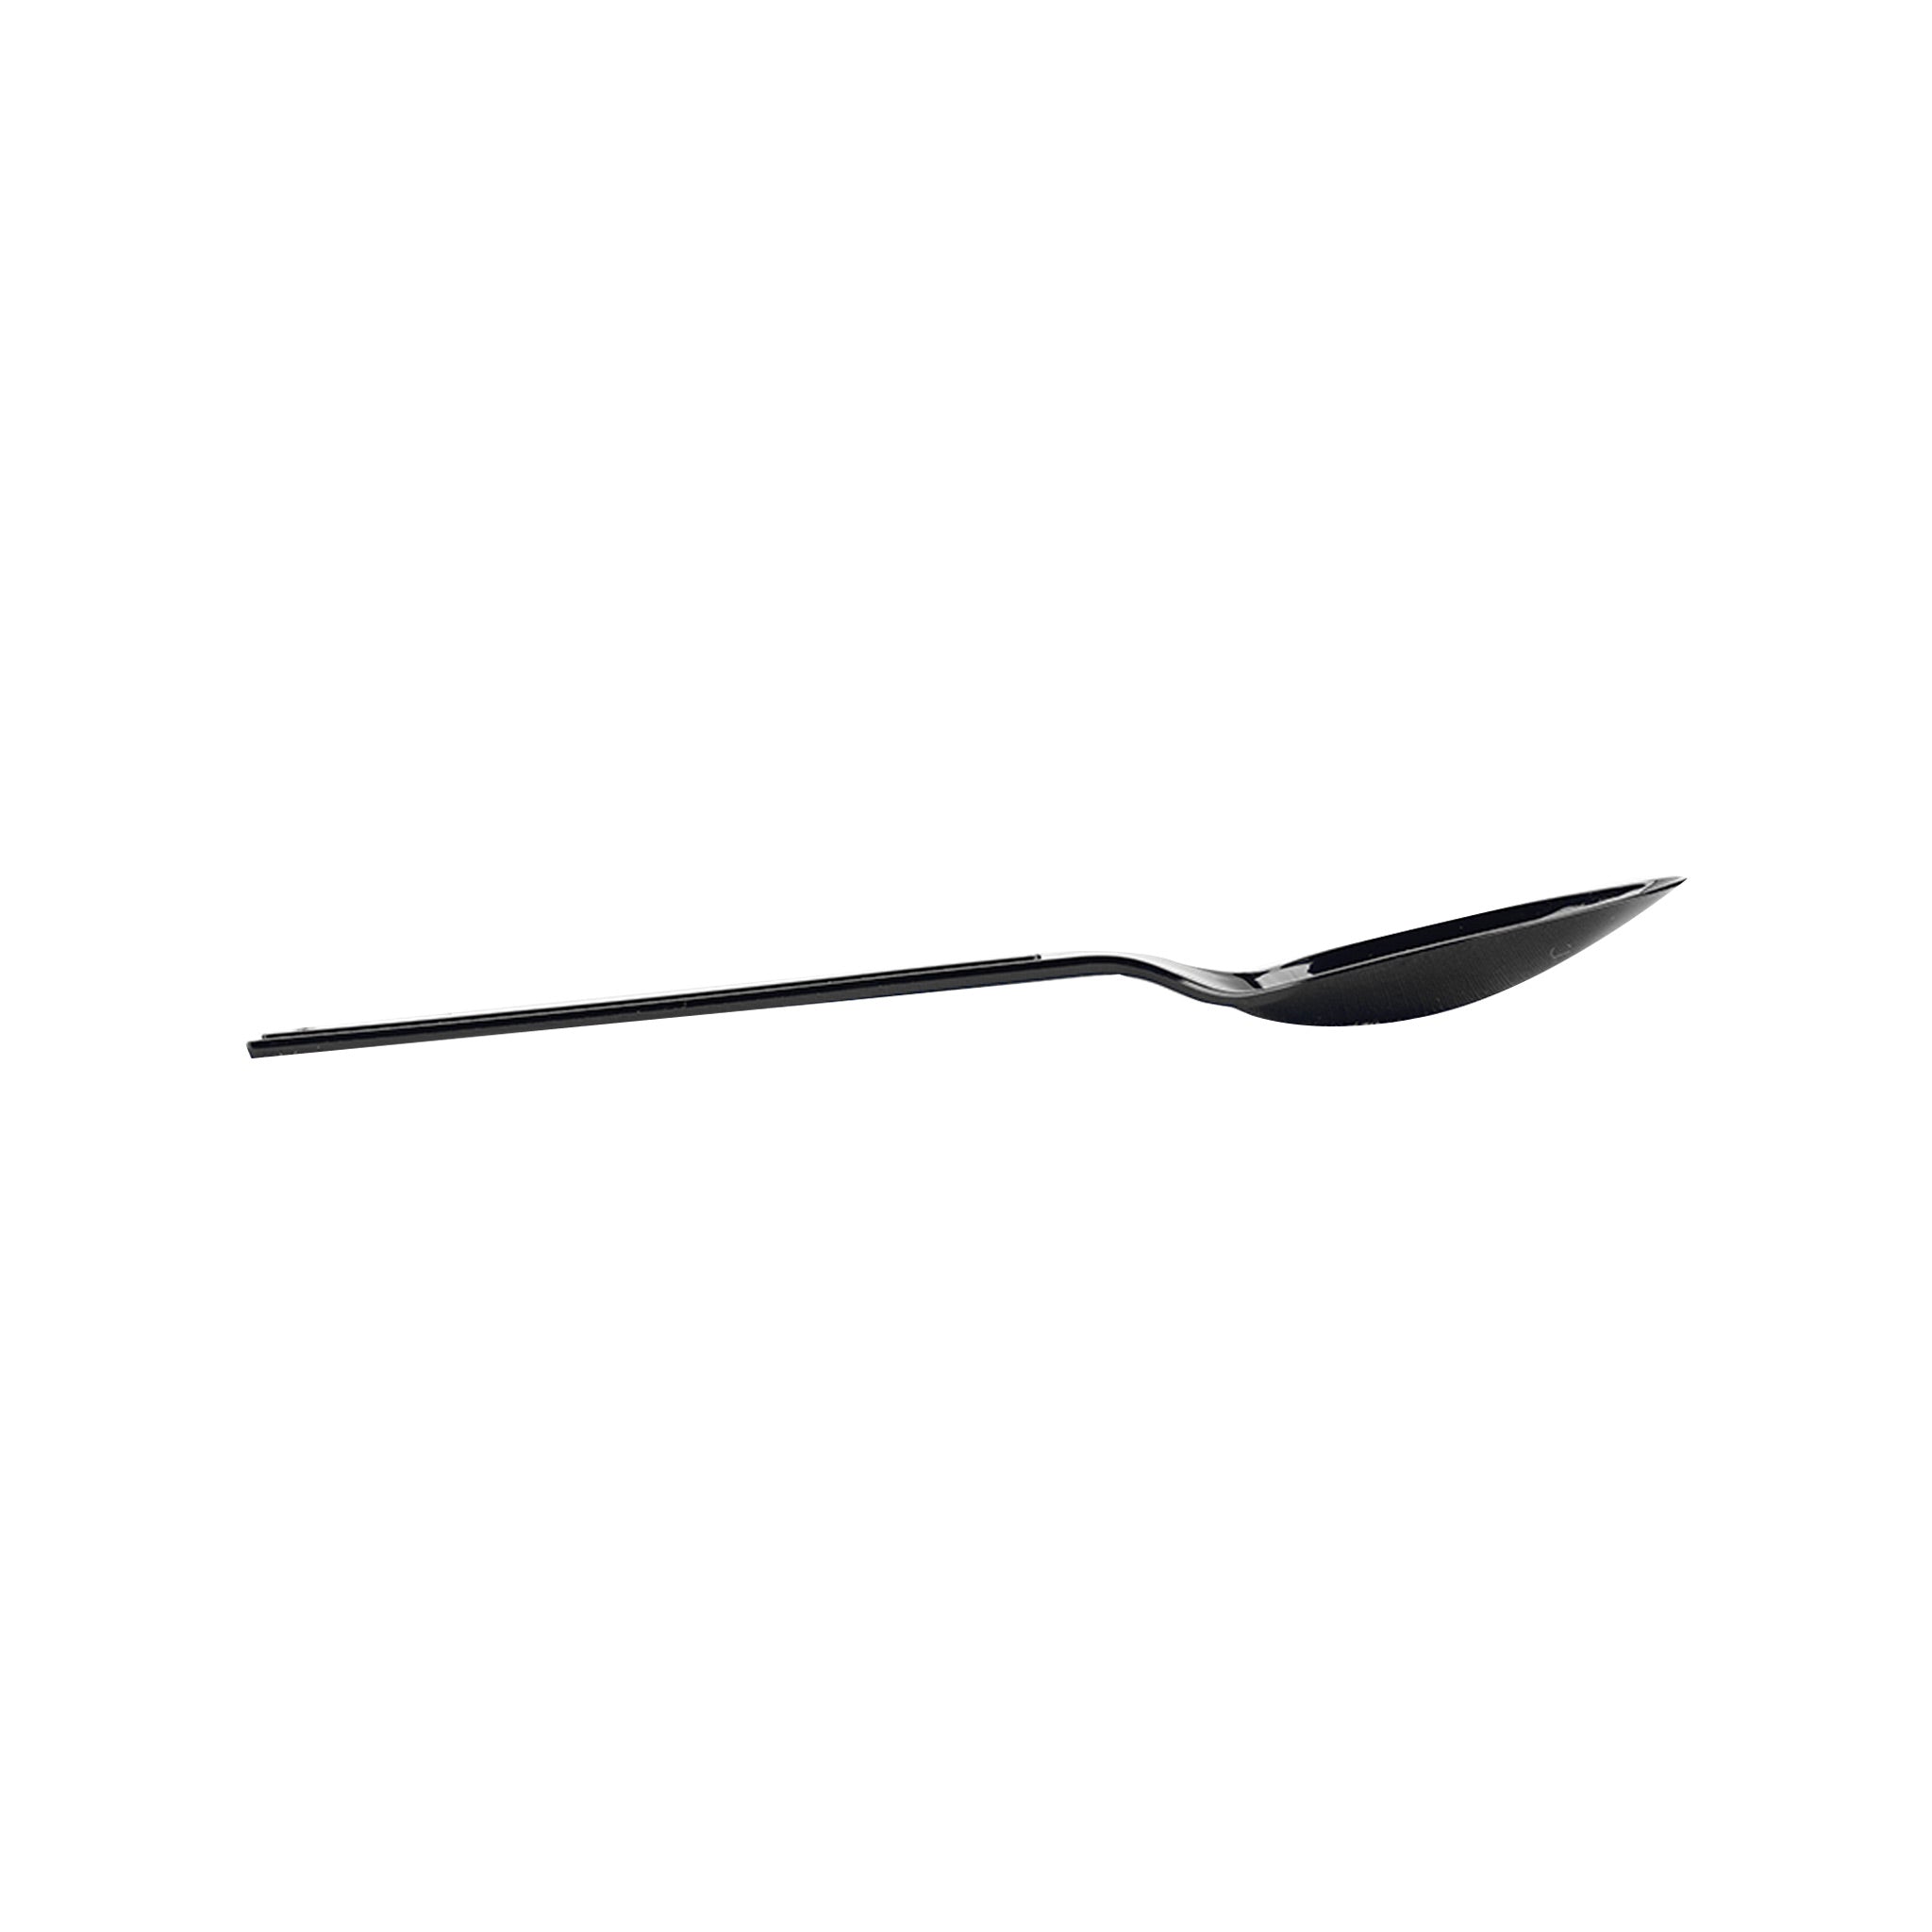 200 pieces Black Medium Duty Spoon - 3.2 Gram